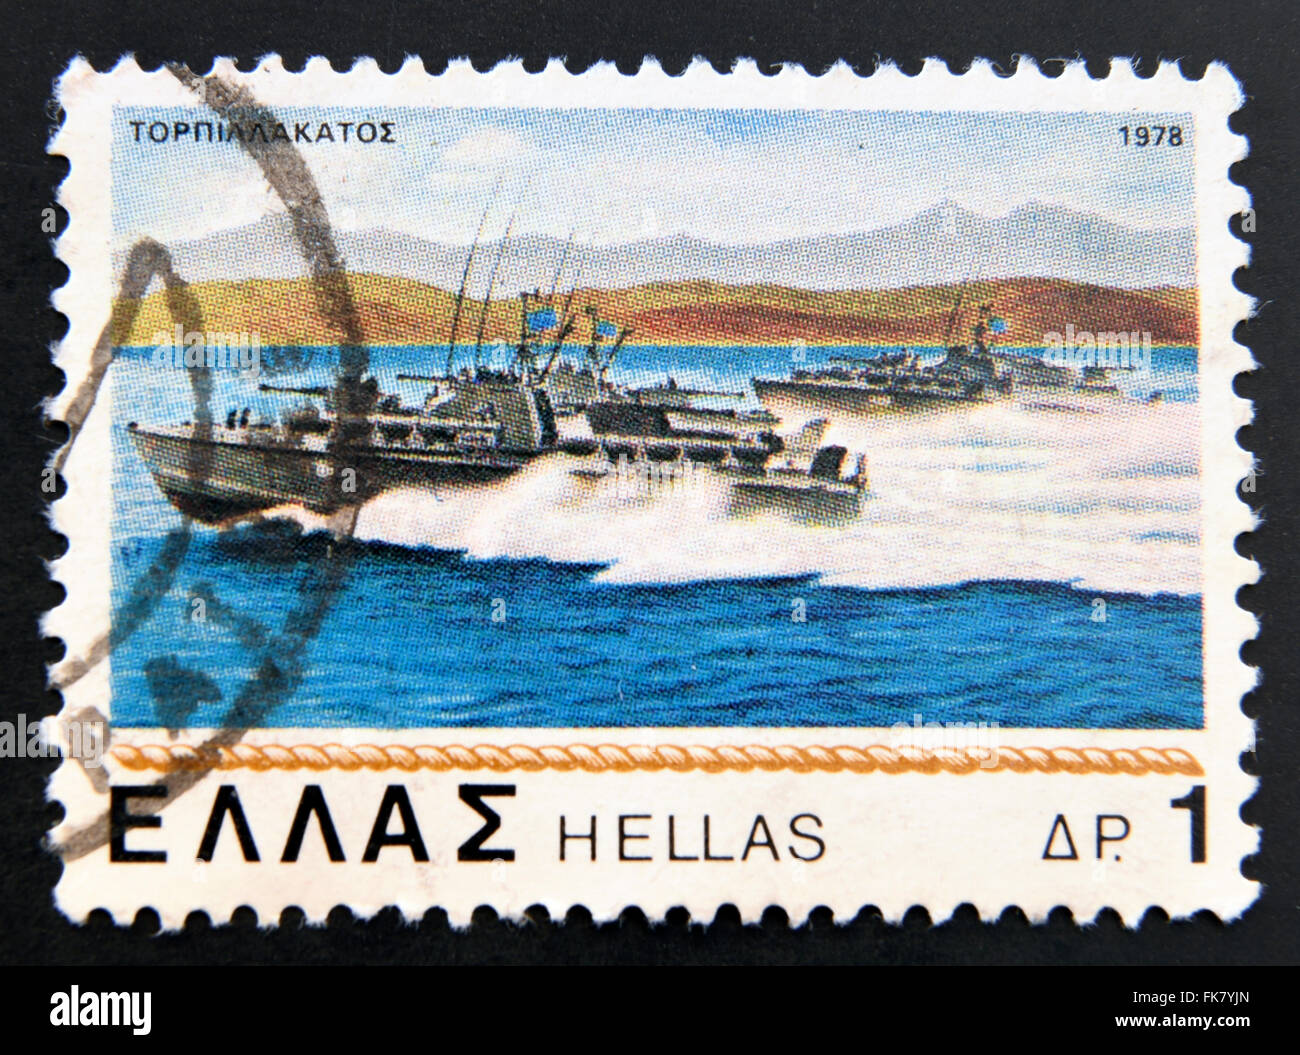 Grèce - circa 1978 : timbre imprimé en Grèce montre des torpilleurs, série de nouveaux et anciens navires de la marine grecque, vers 1978 Banque D'Images